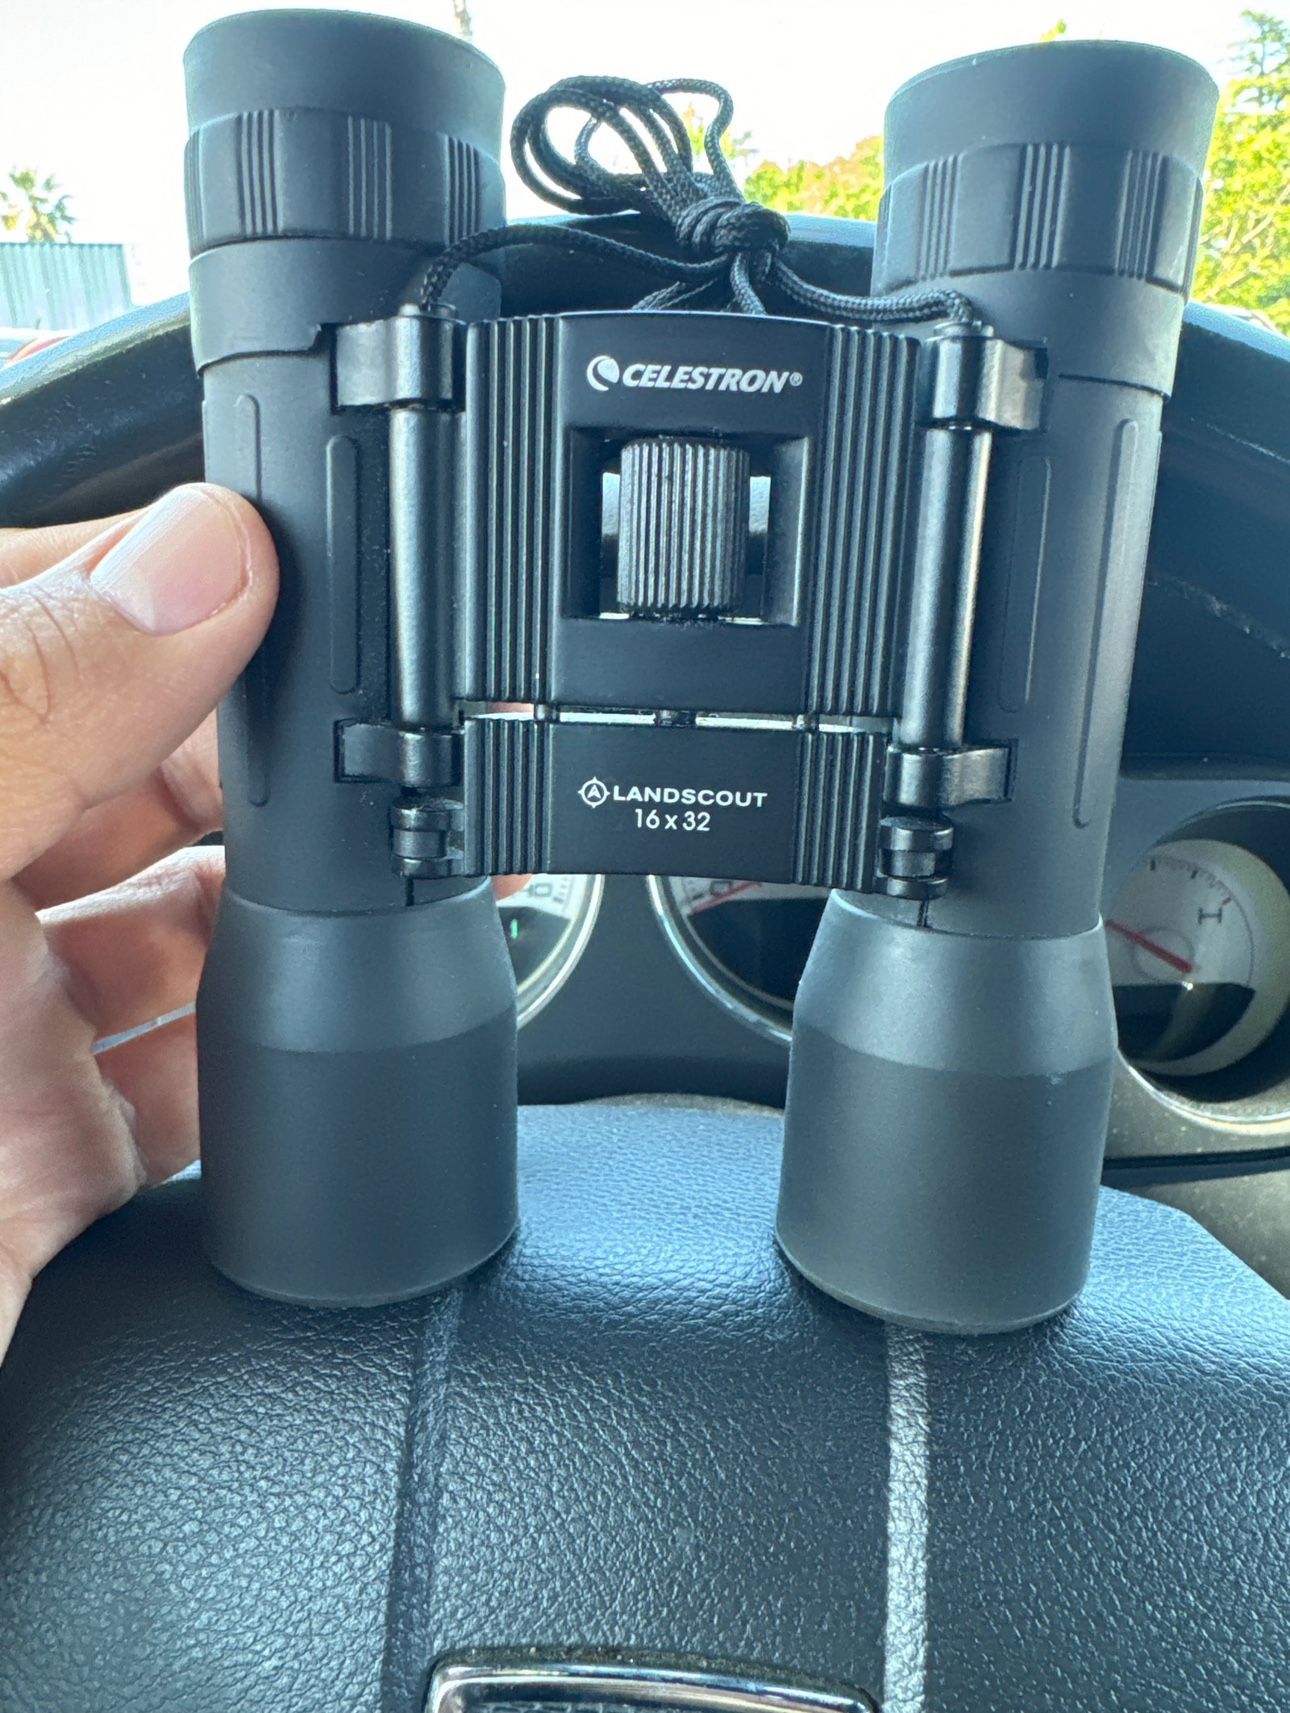 Celestron 16x32 Binoculars 